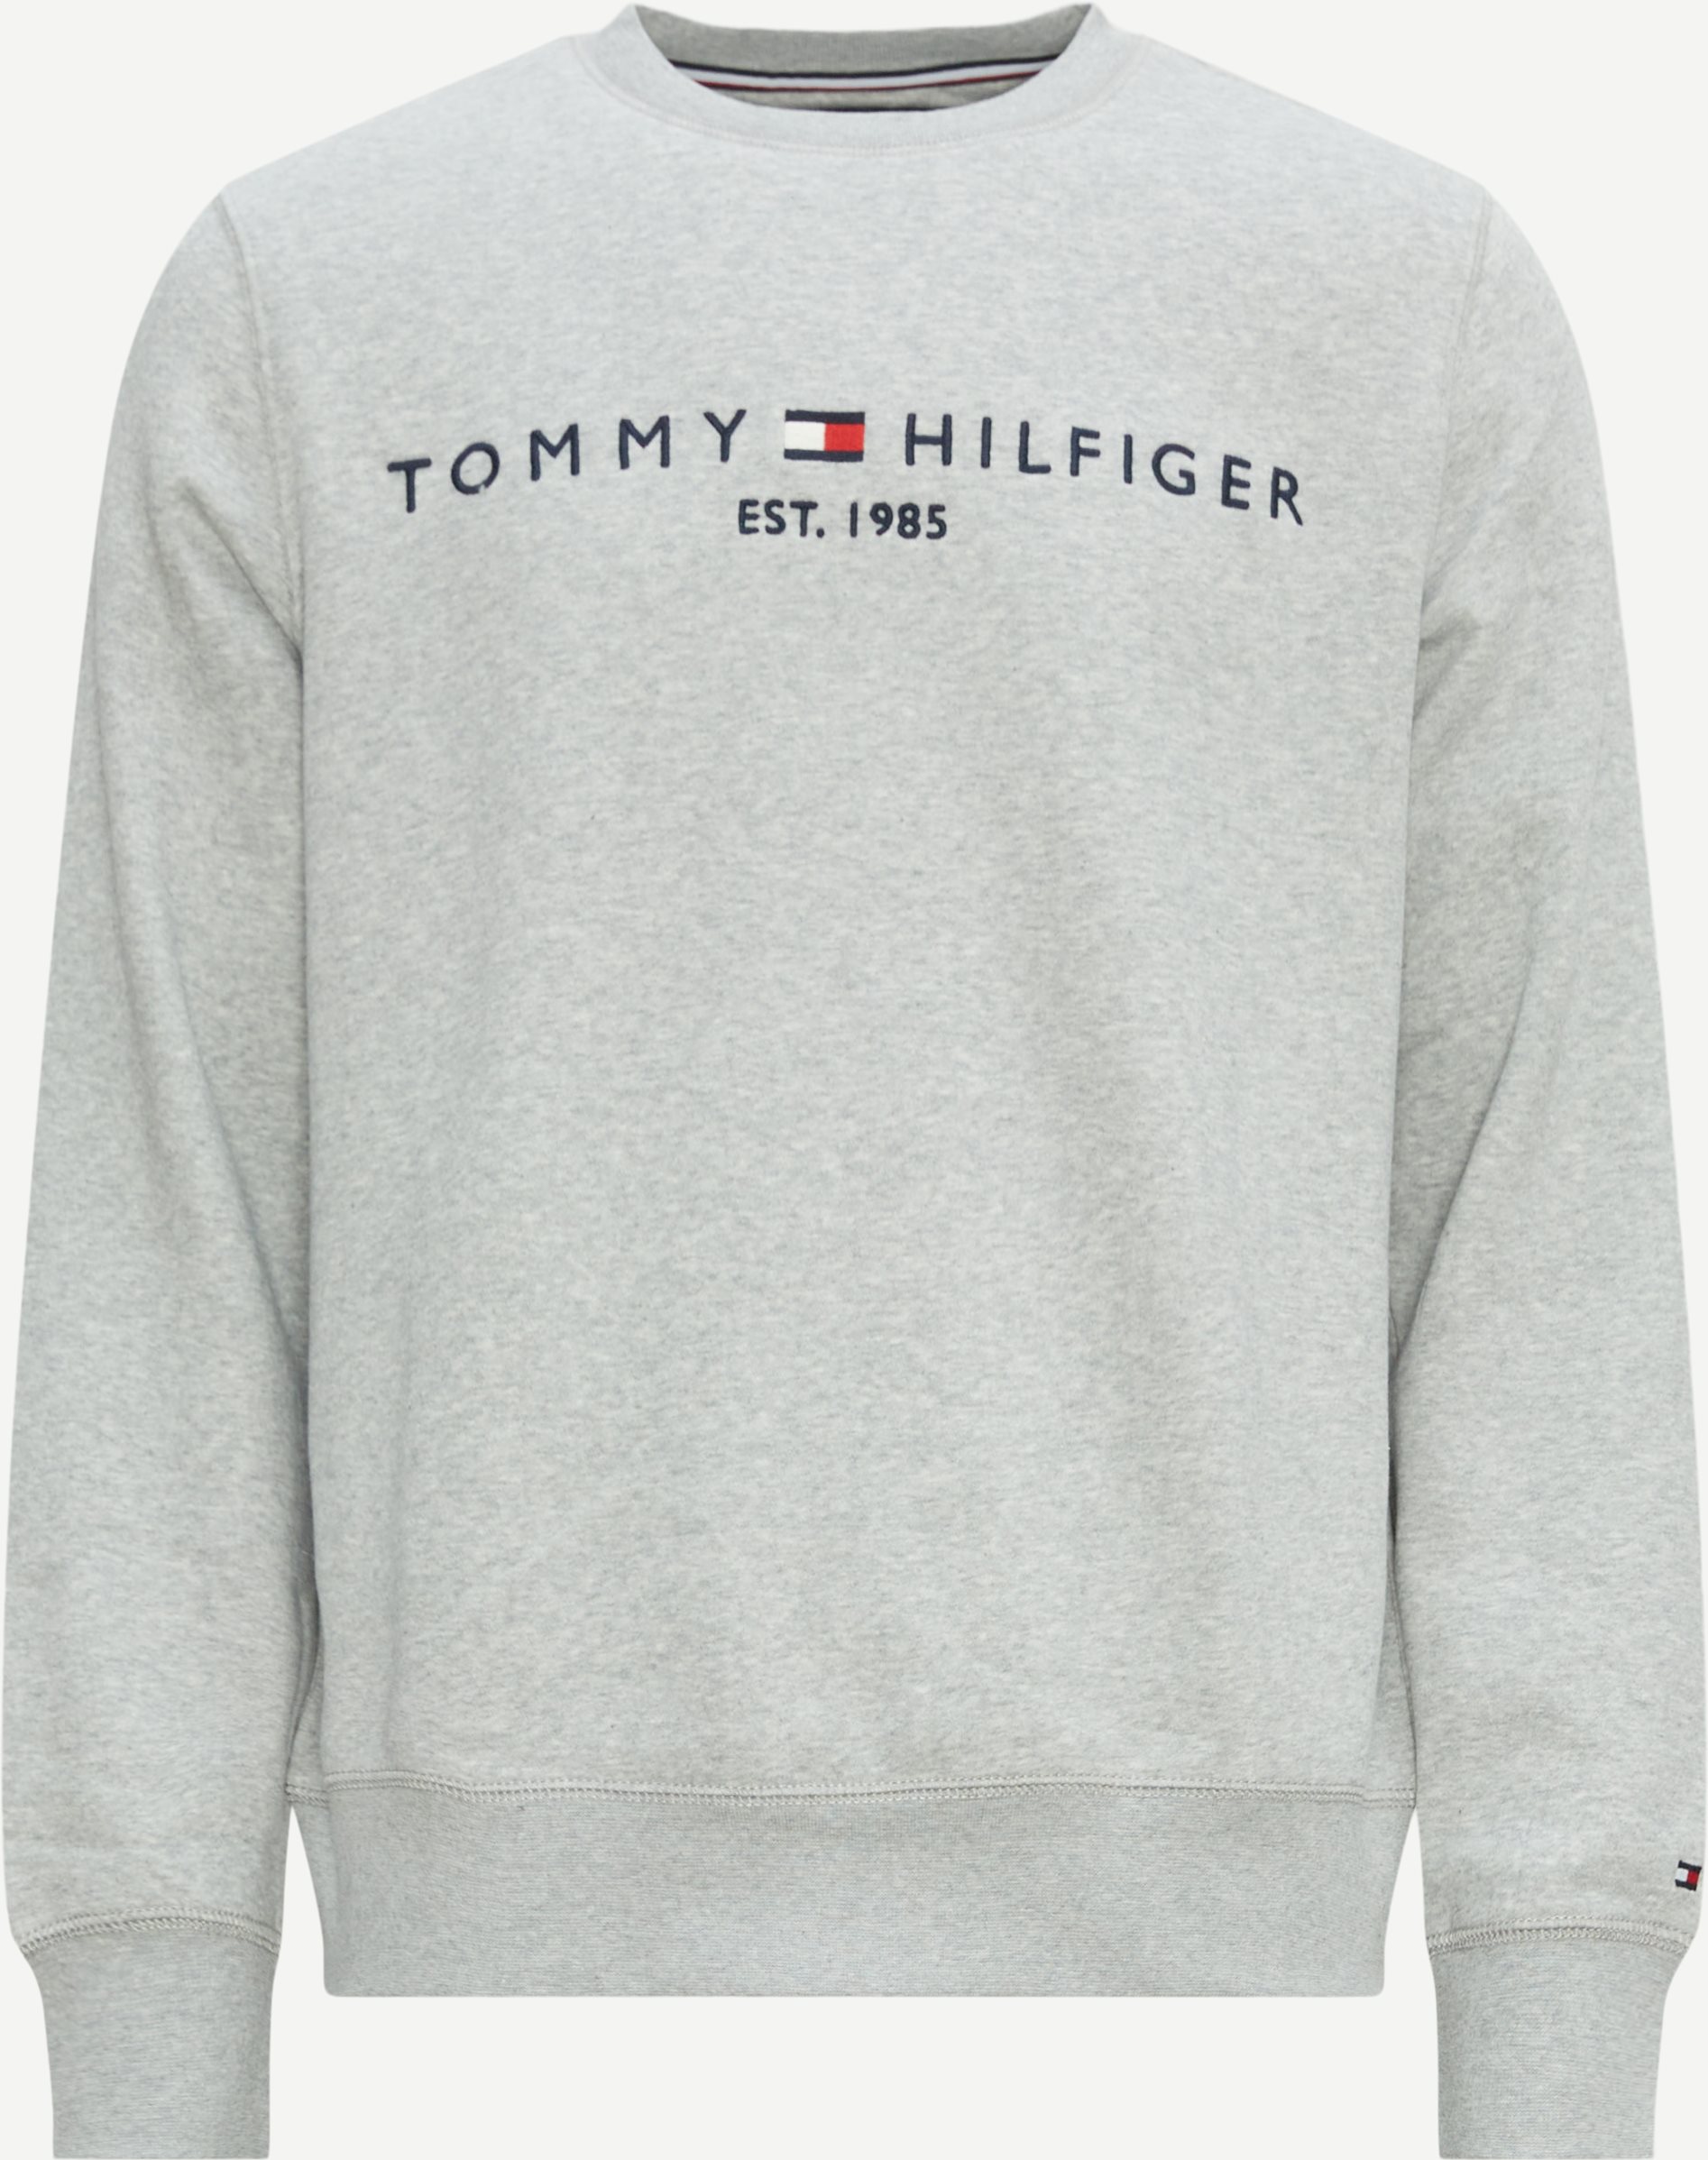 Tommy Hilfiger Sweatshirts 11596 TOMMY LOGO SWEATSHIRT 2303 Grey